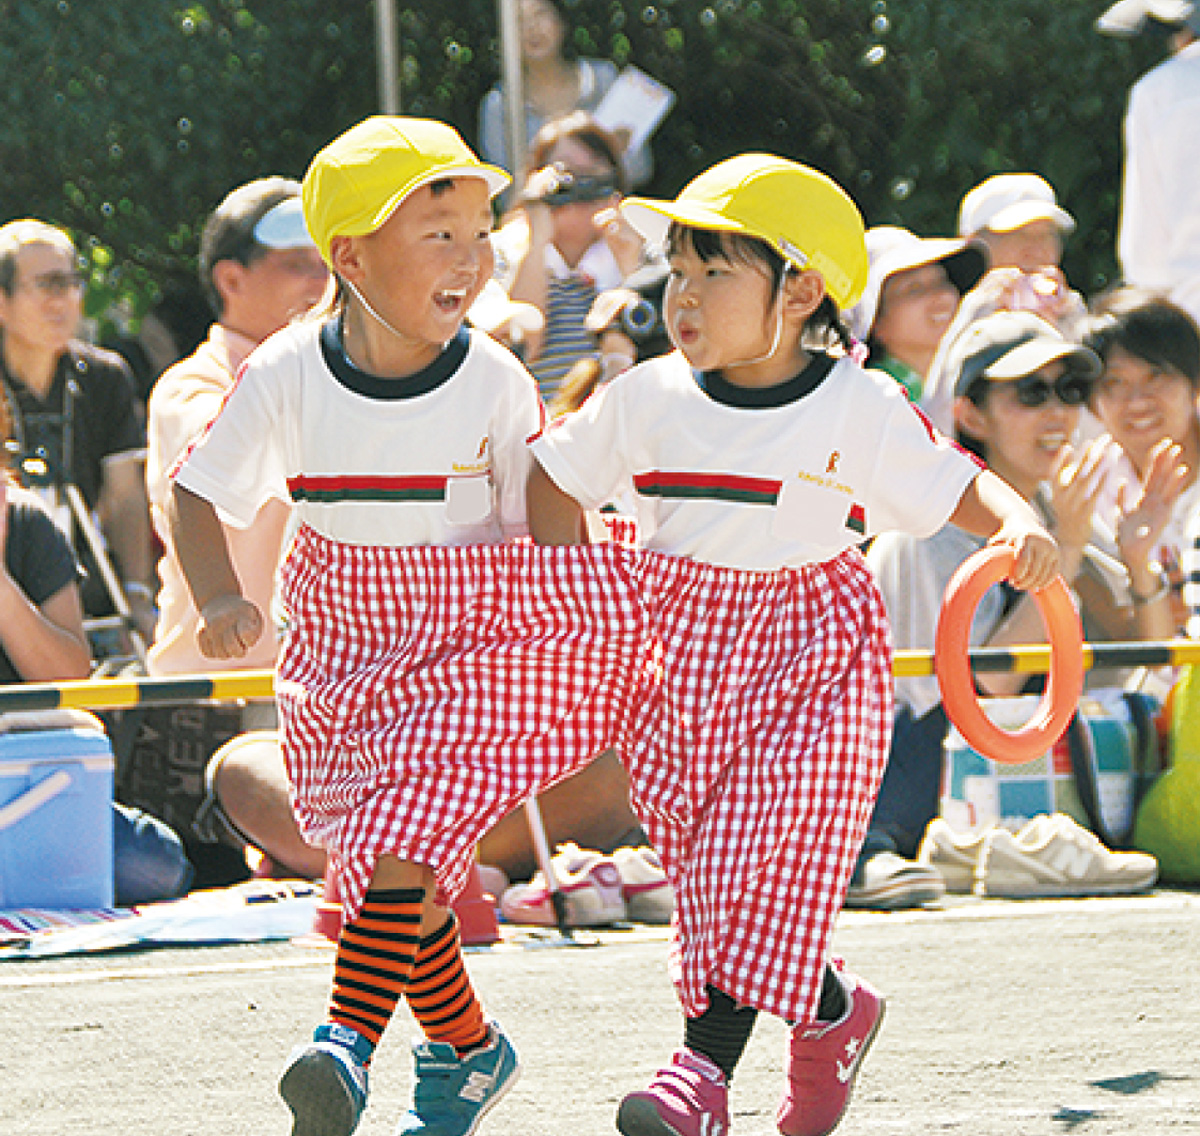 みんなの笑顔が一番 町田ひまわり幼稚園で運動会 町田 タウンニュース